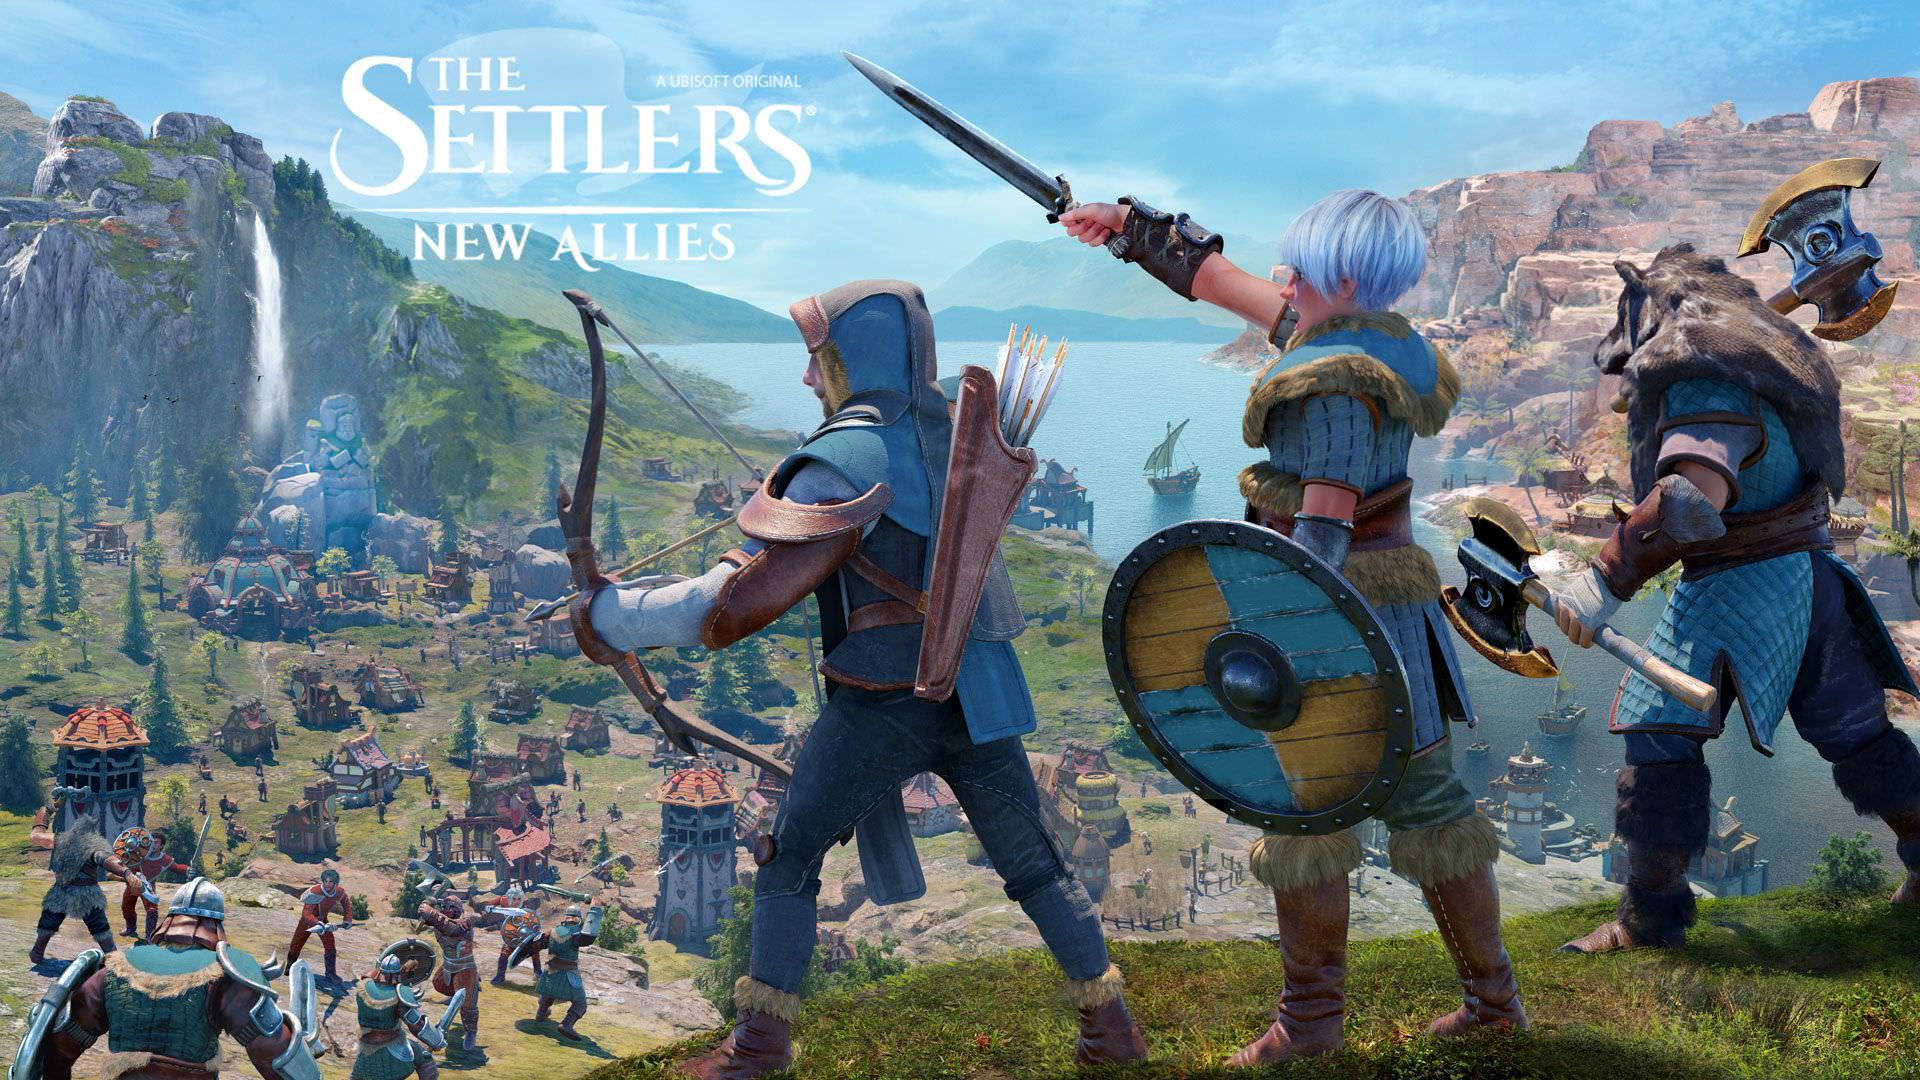 اعلام تاریخ انتشار نسخه کامپیوتر بازی The Settlers: New Allies